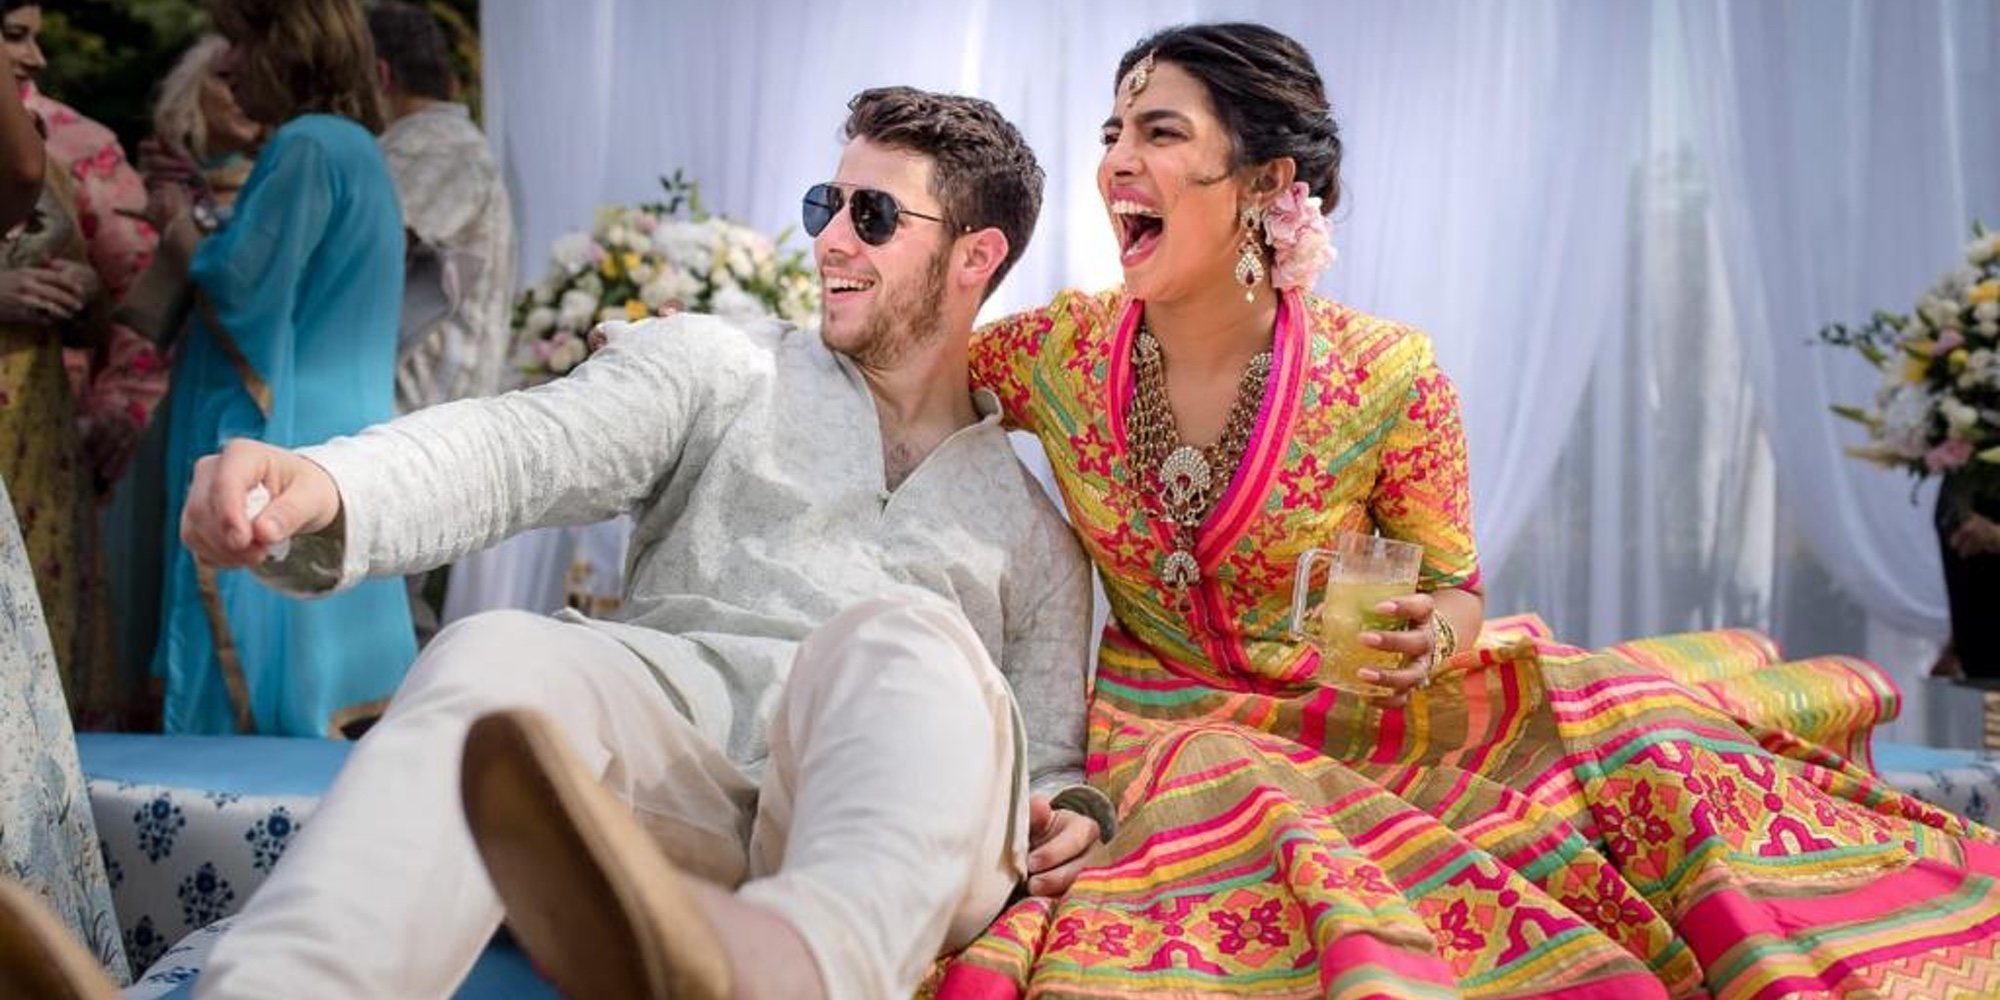 Nick Jonas y Priyanka Chopra ya son marido y mujer: Así está siendo sun increíble boda india